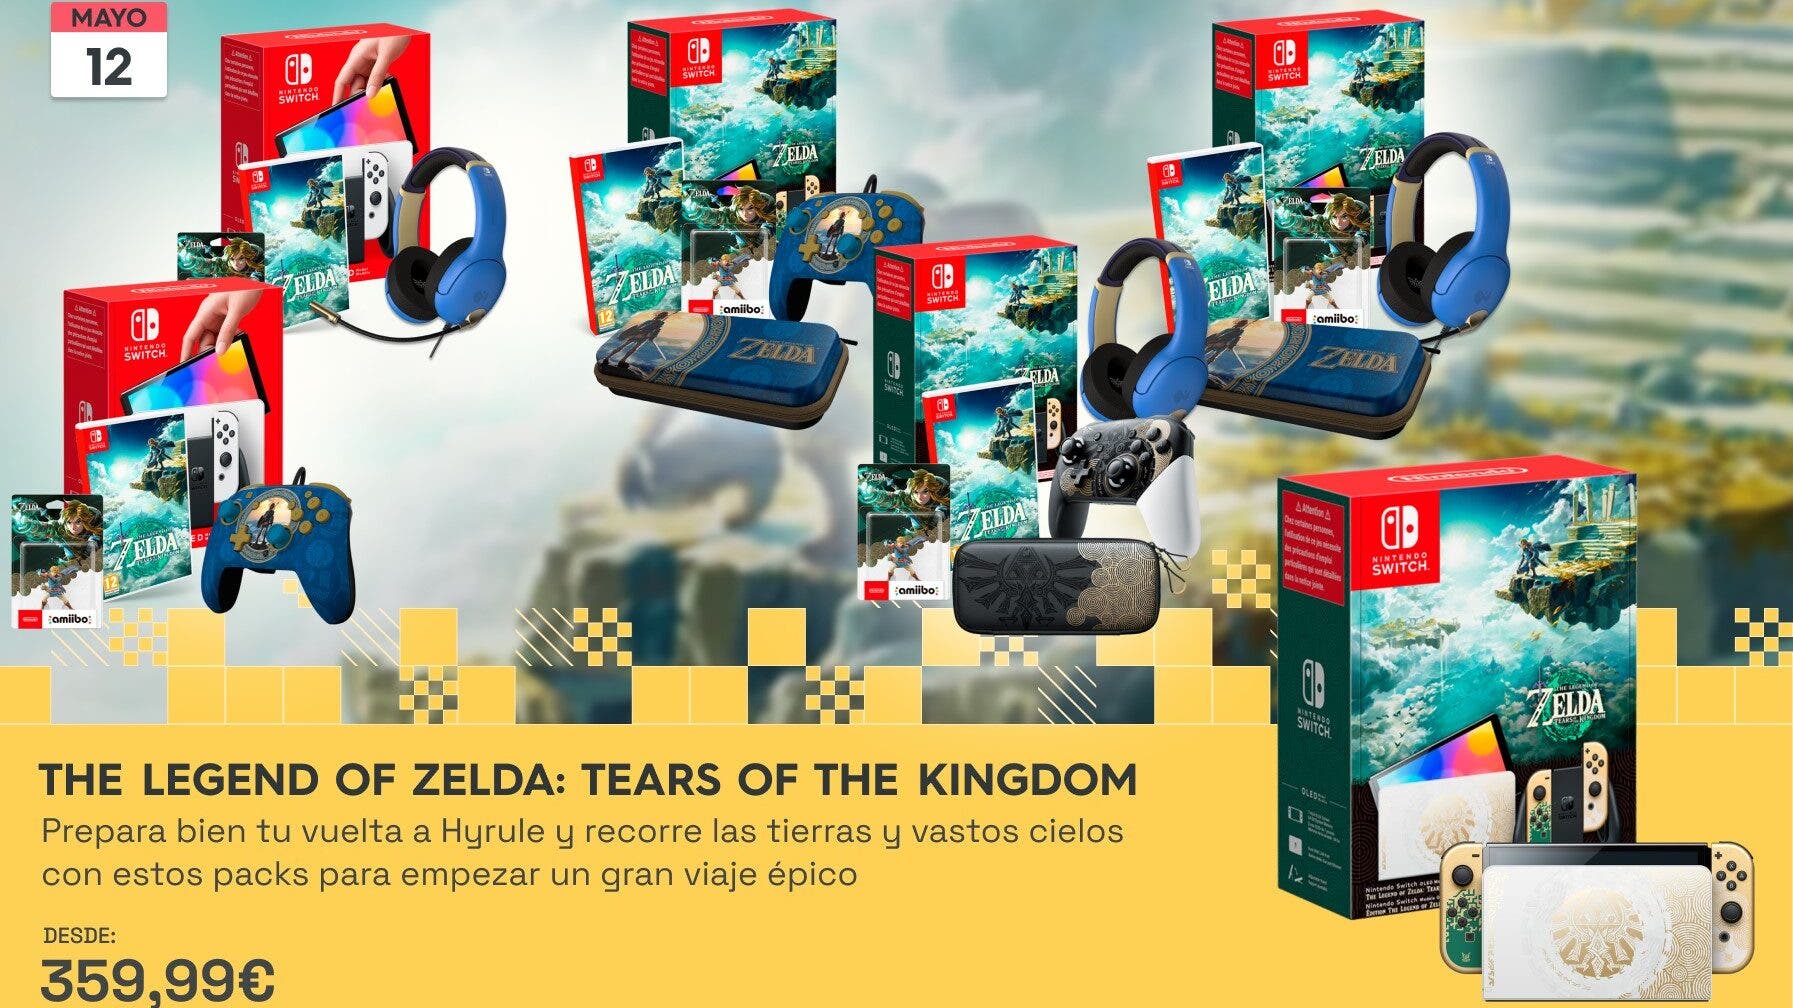 Con el anuncio de la consola, mando y funda de Zelda: Tears of the Kingdom llegan packs increíbles